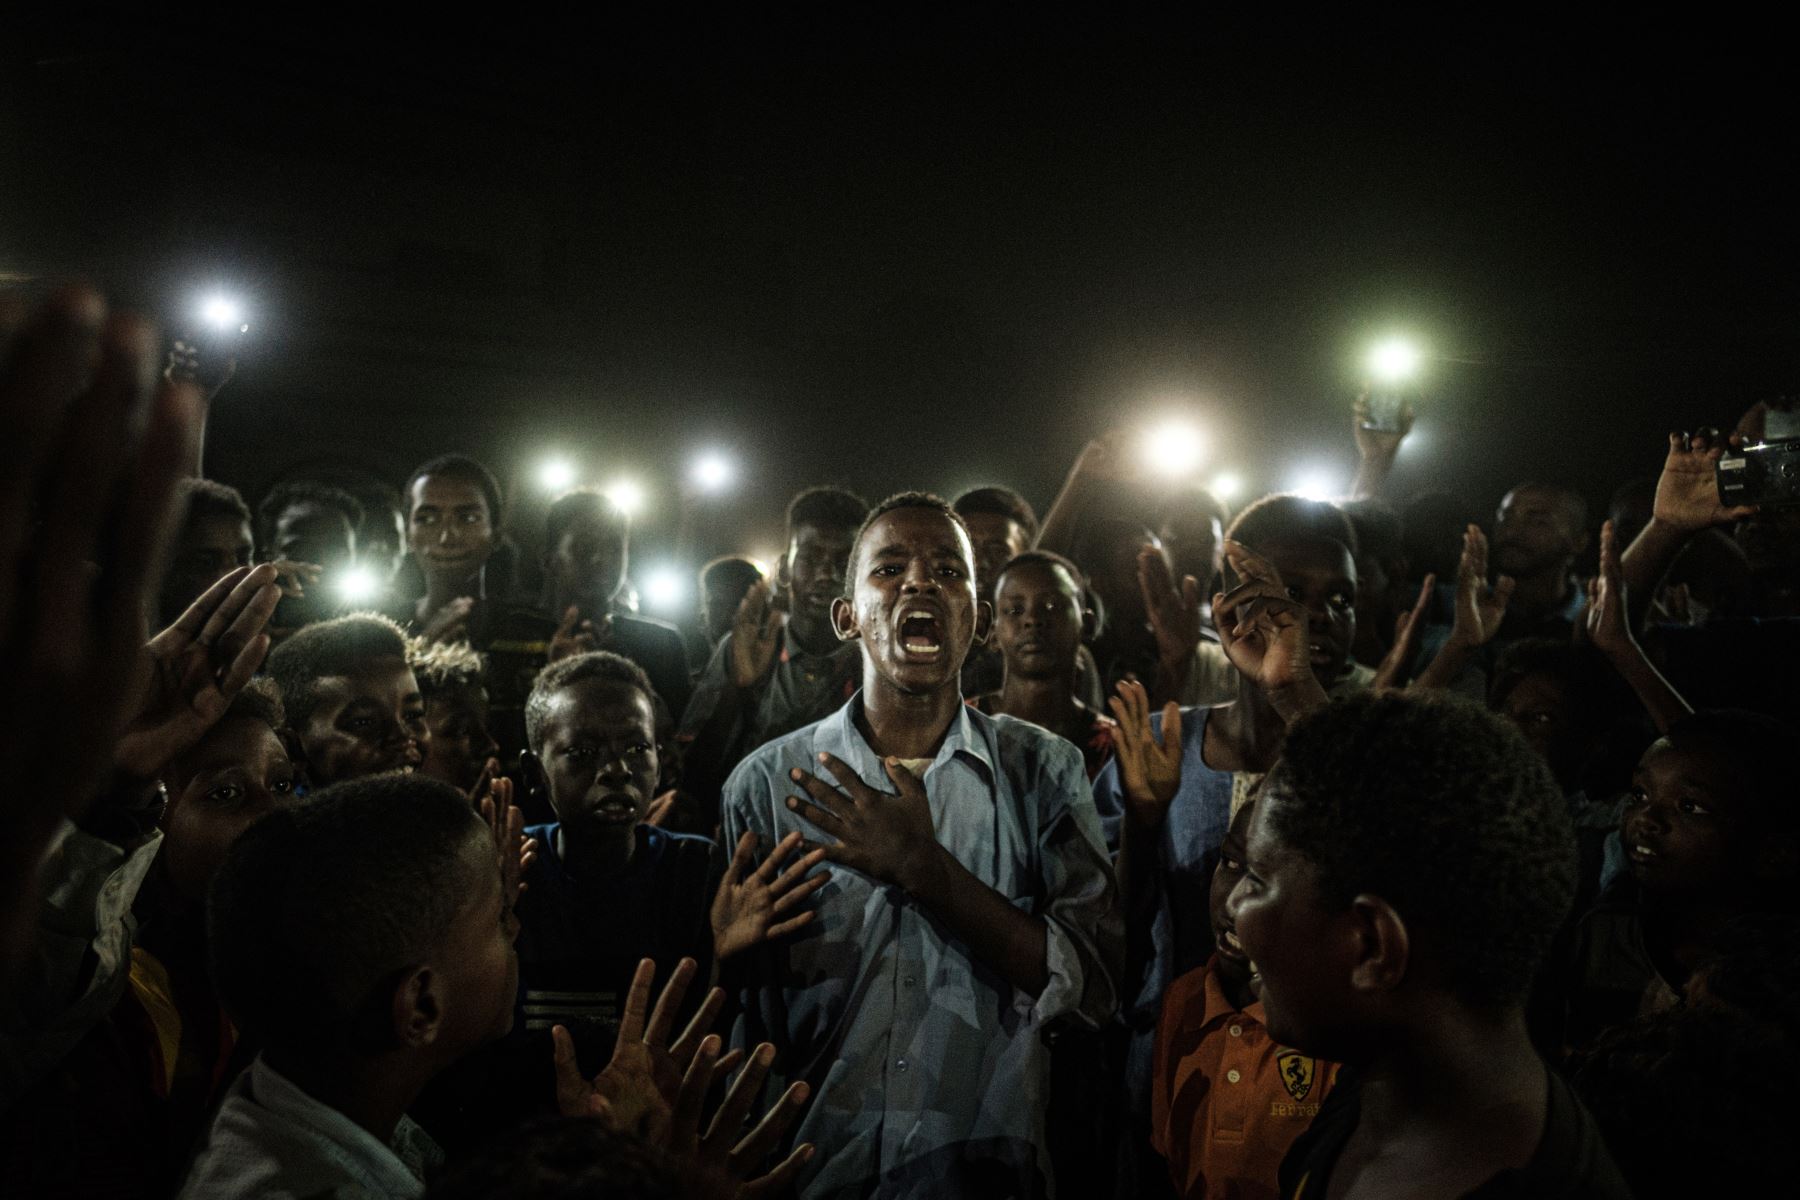 La fotografía ganadora se tomó el 19 de junio de 2019 en la capital sudanesa, en plenas manifestaciones contra la Junta militar que dirigía el país de forma interina. Foto: Yasuyoshi Chiba